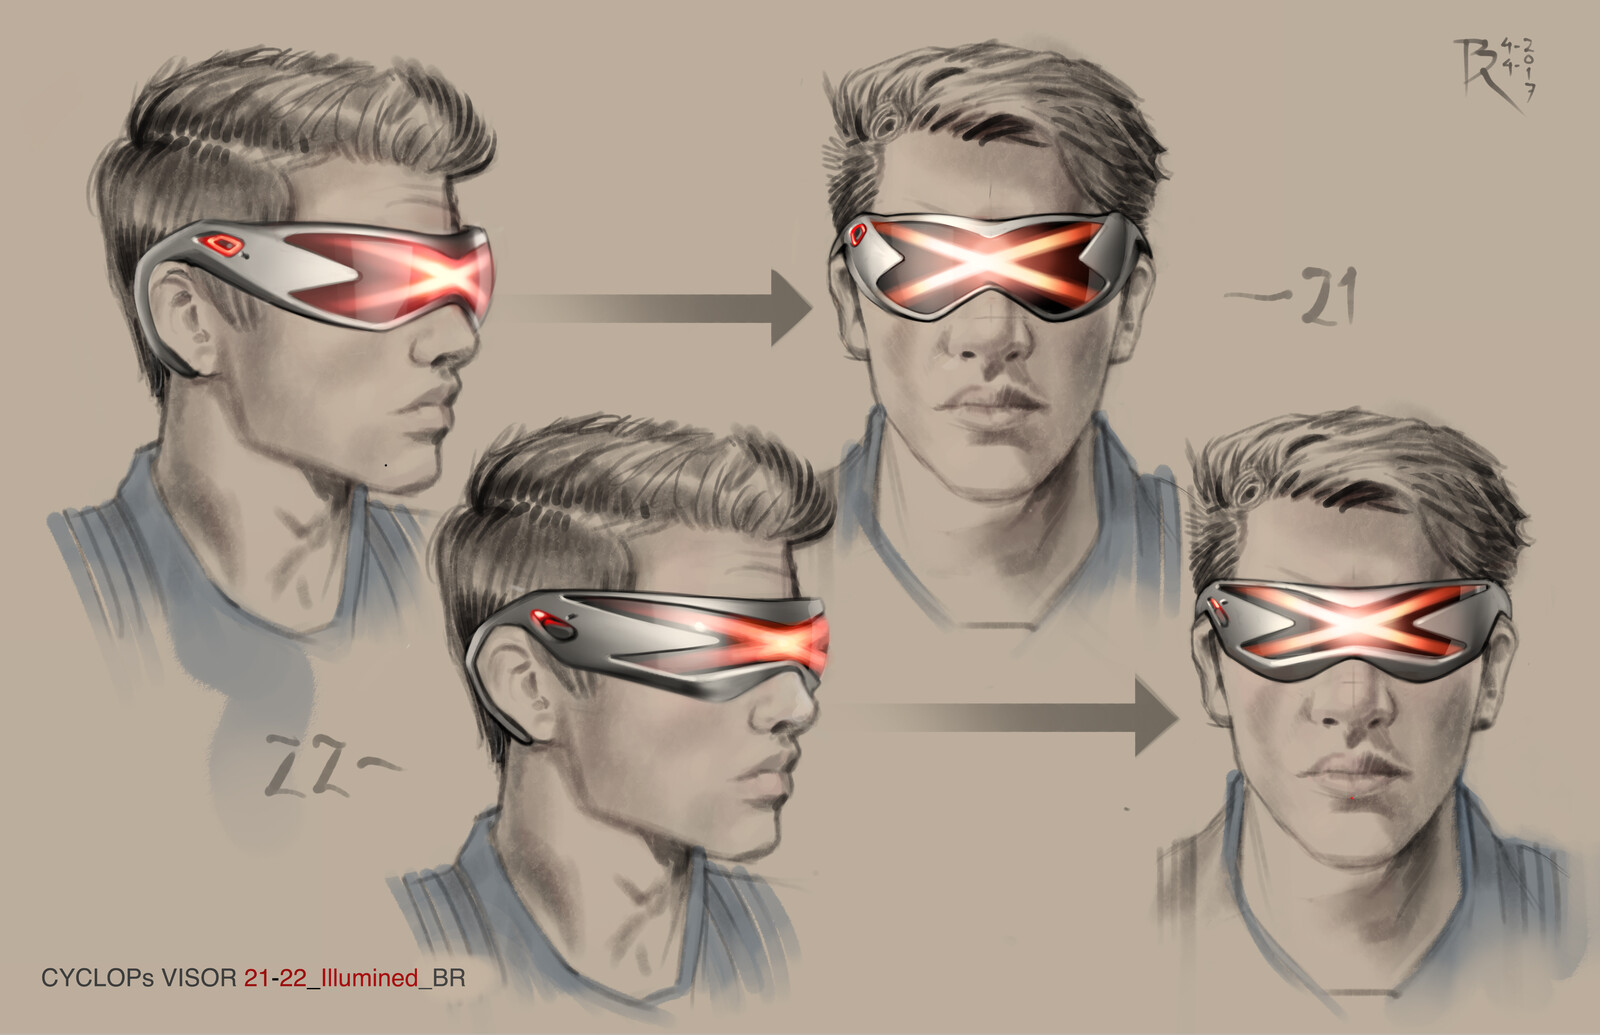 Cyclops' Visor 21-22 ILLUMINED